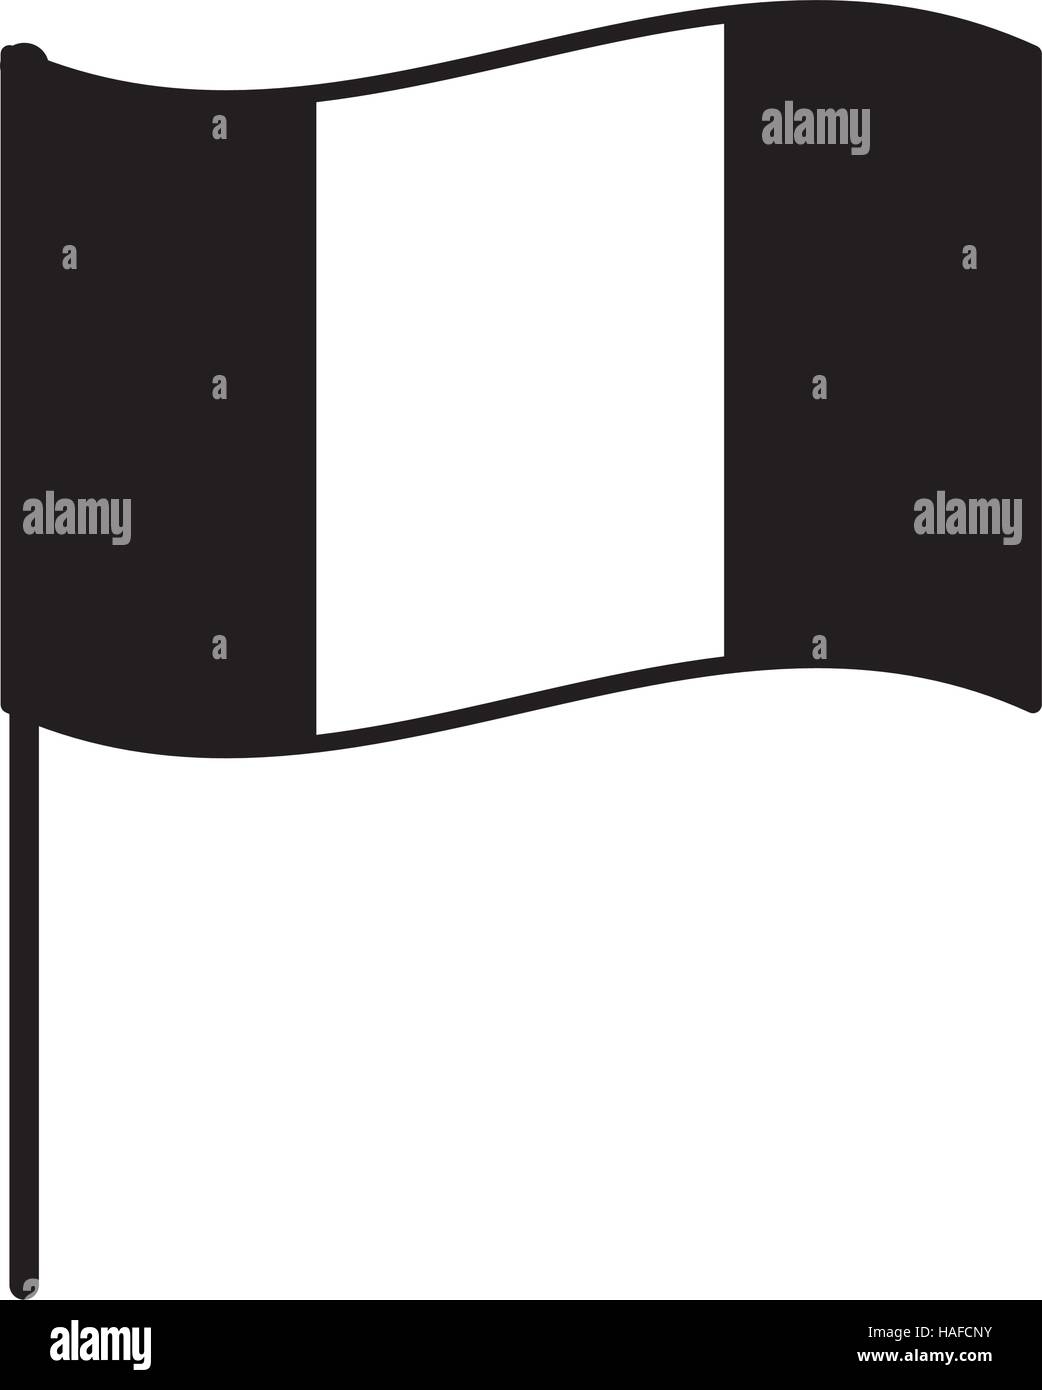 Fahne schwarz Alamy - Stock-Vektorgrafik weiße Frankreich